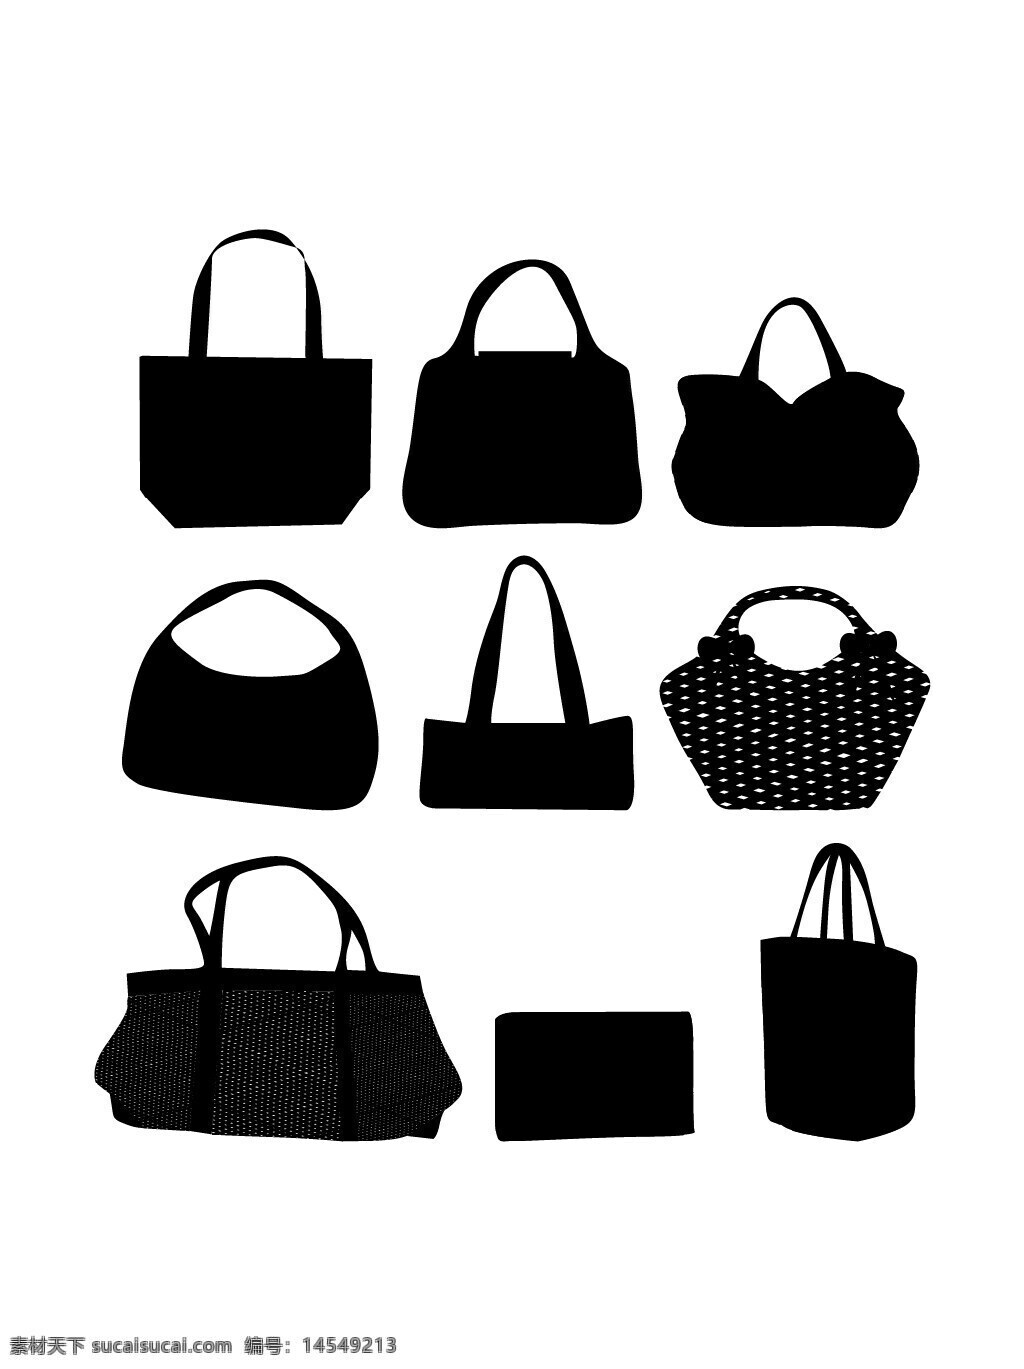 包 书包 皮包 挎包 背包 单肩包 名牌包 布包 袋子 布袋 矢量素材 免扣素材